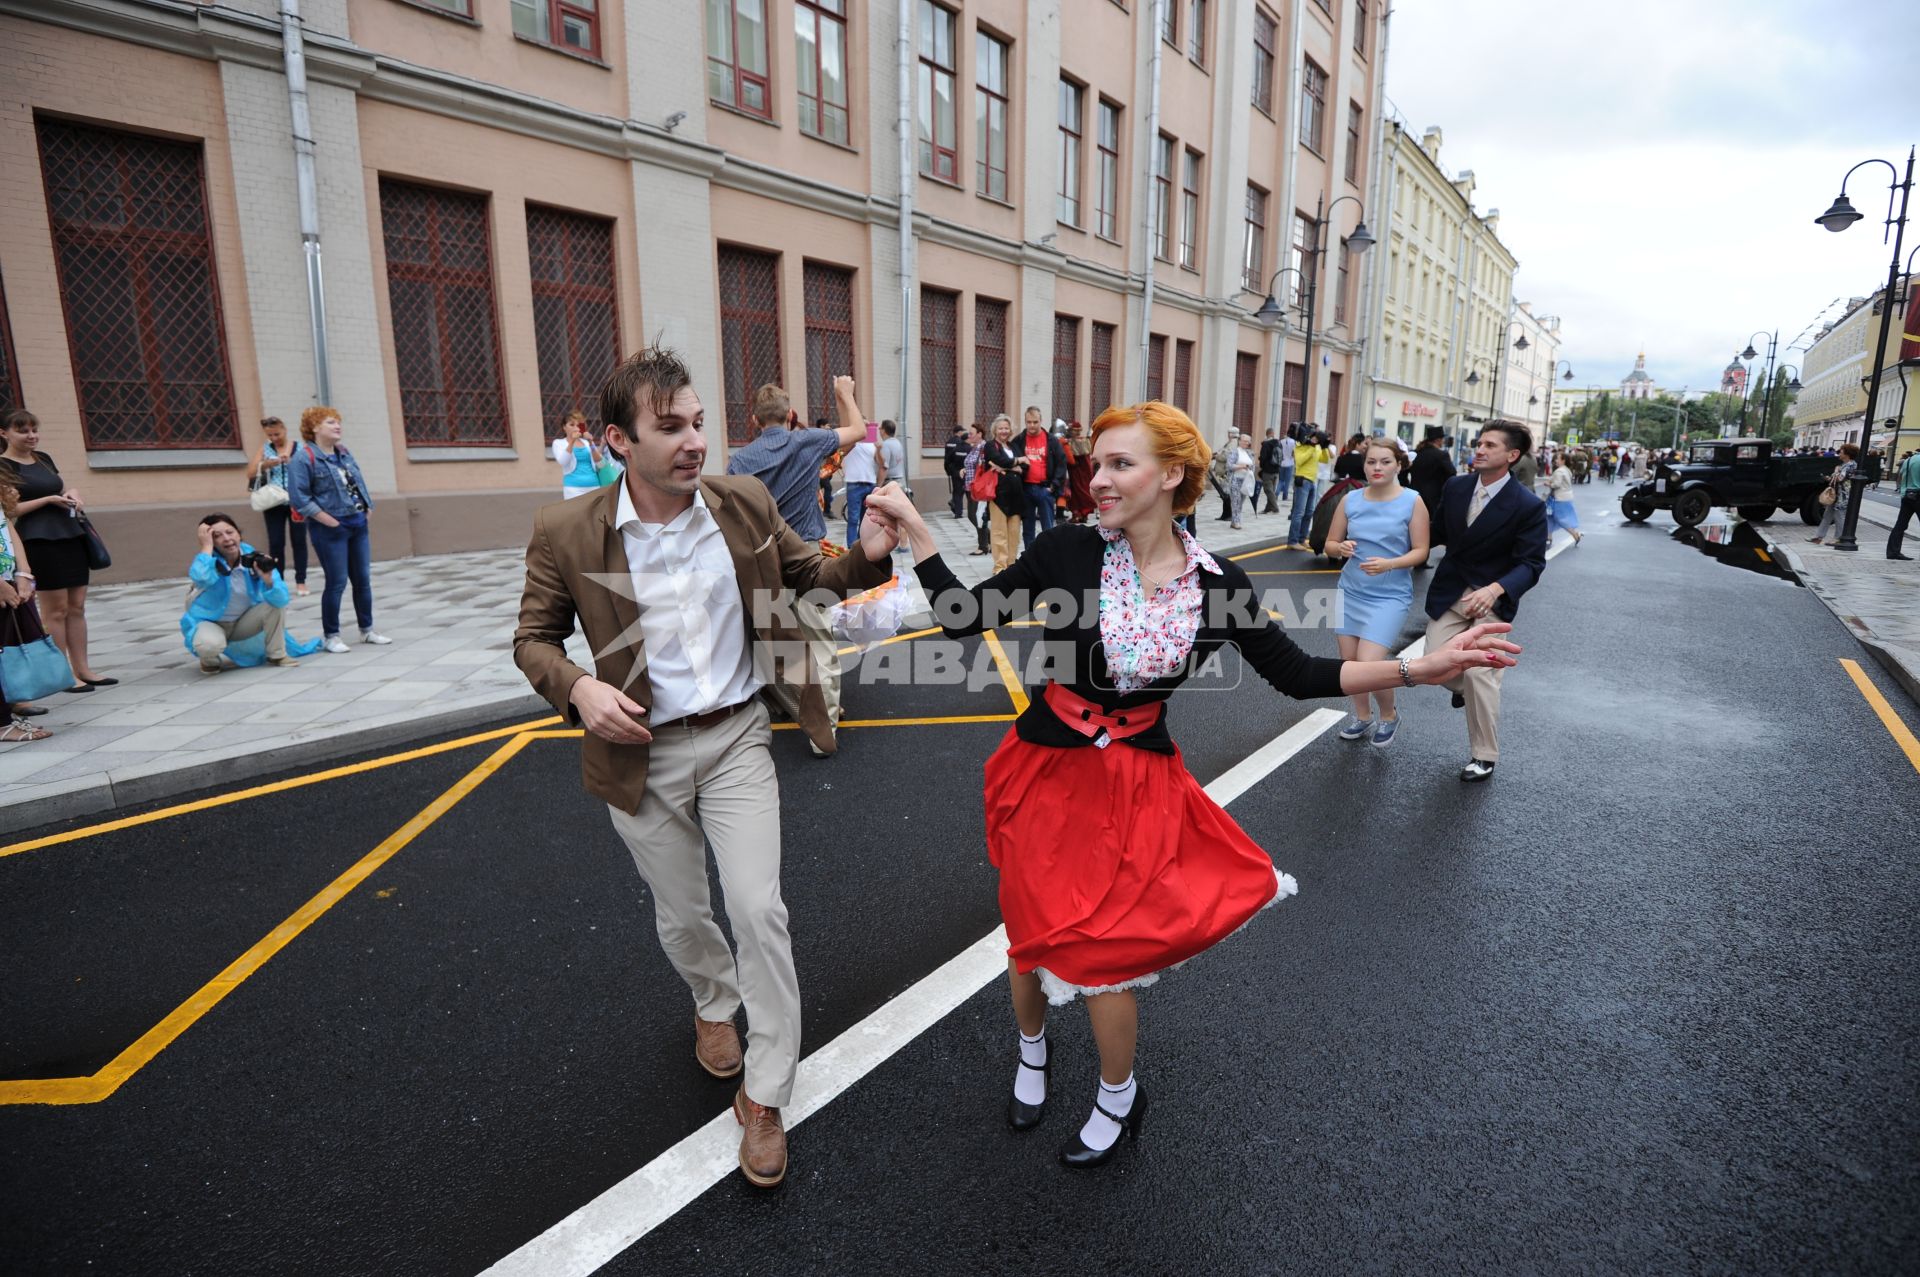 Торжественное открытие пешеходной зоны на улице Пятницкая. На снимке: люди в костюмах времен советской России.